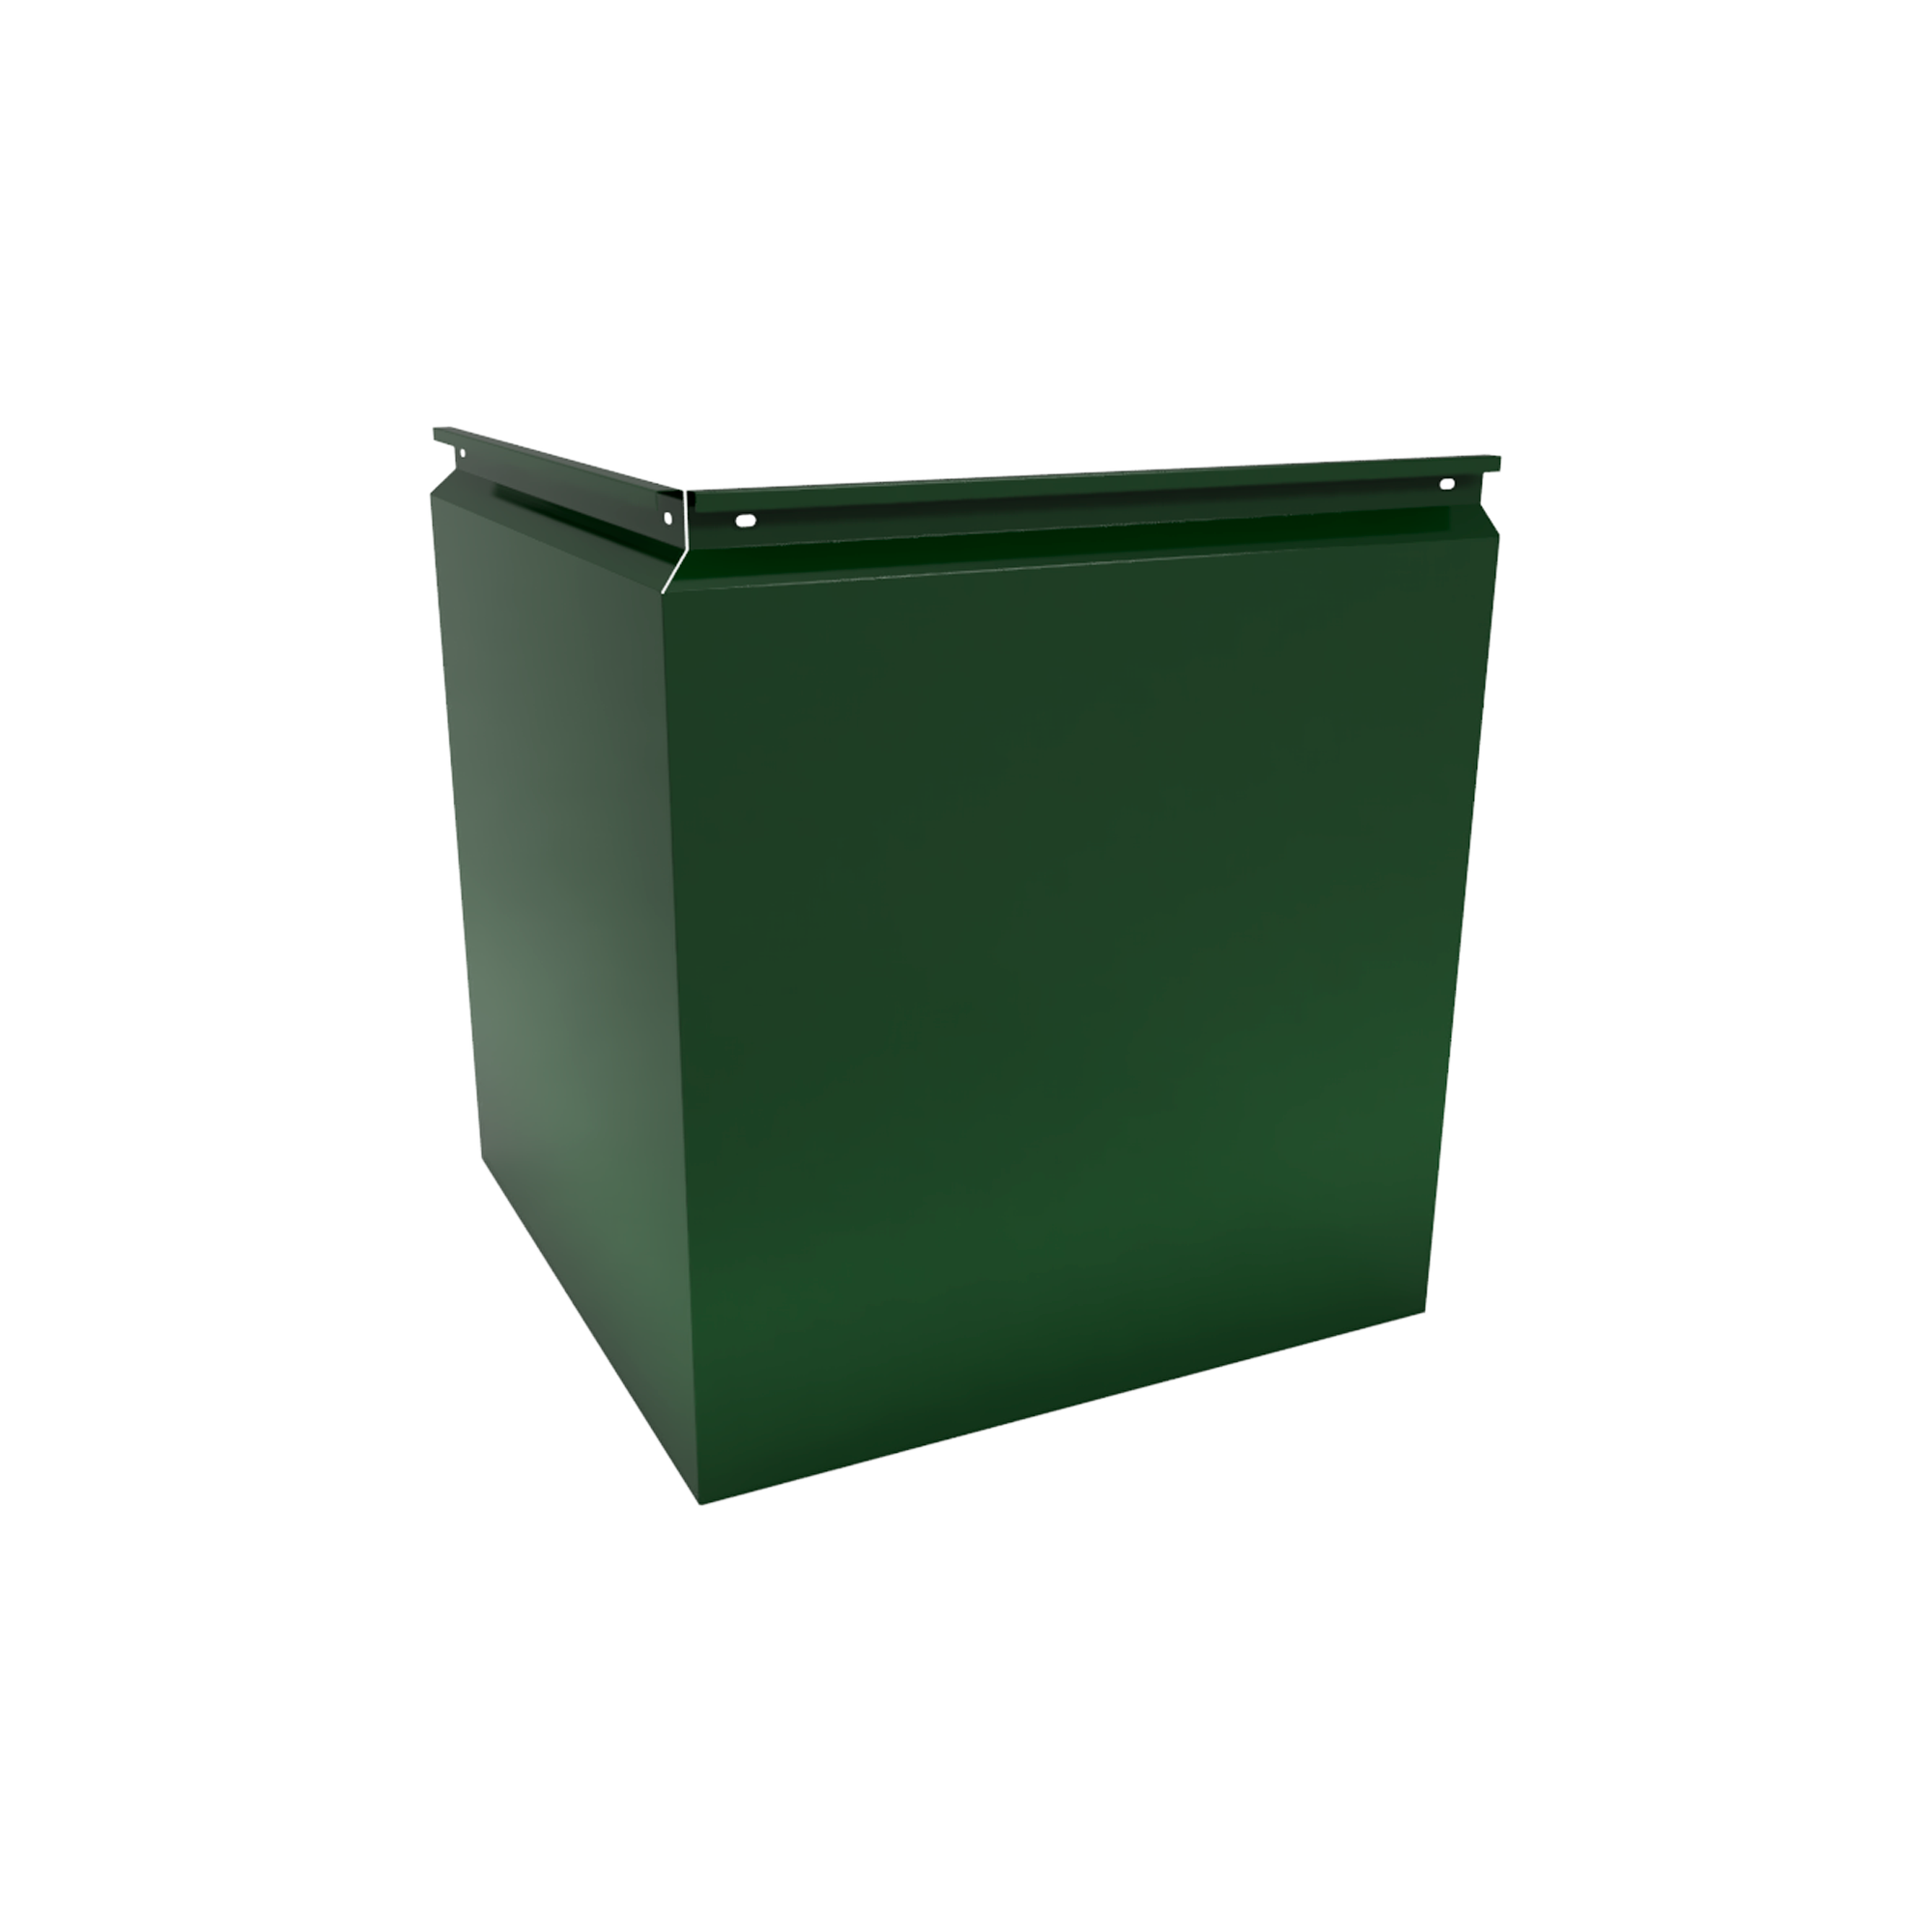 Фасадная кассета Угловая 1025 Зеленый мох 0,65 мм Фасадные кассеты Кровля Сервис